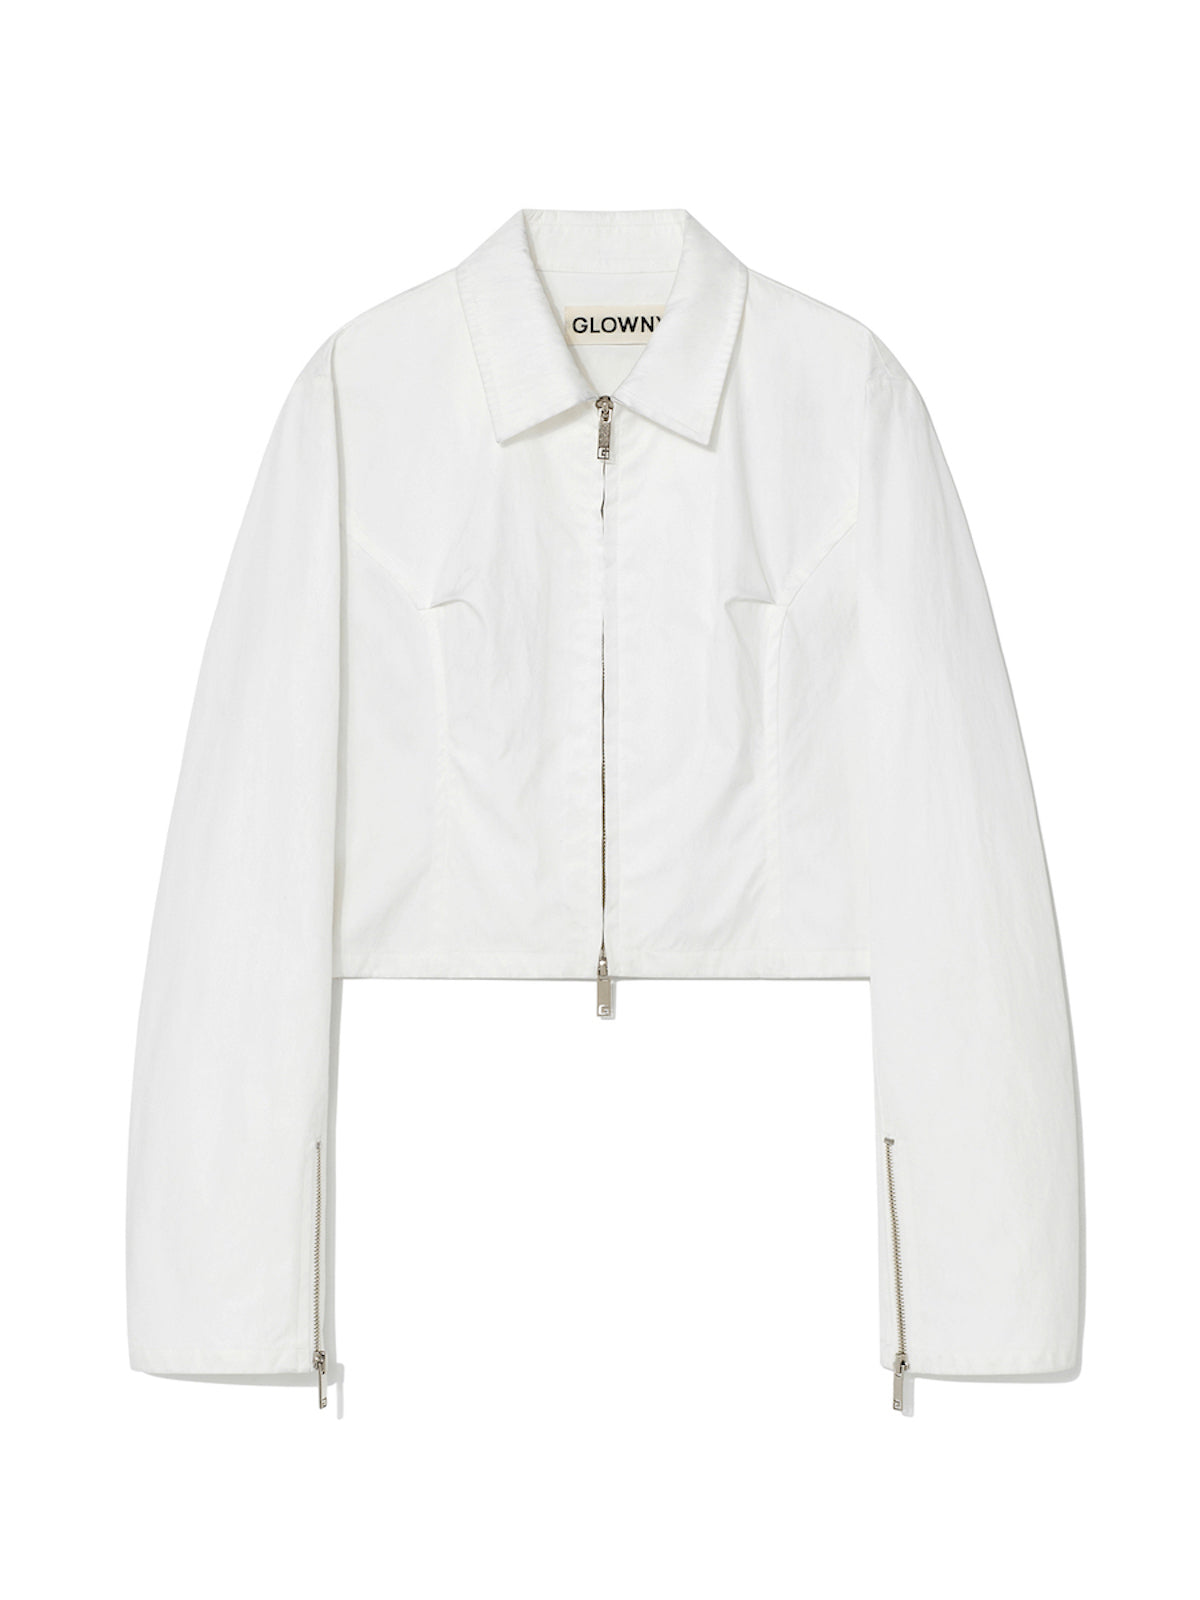 白色制服短襯衫夾克